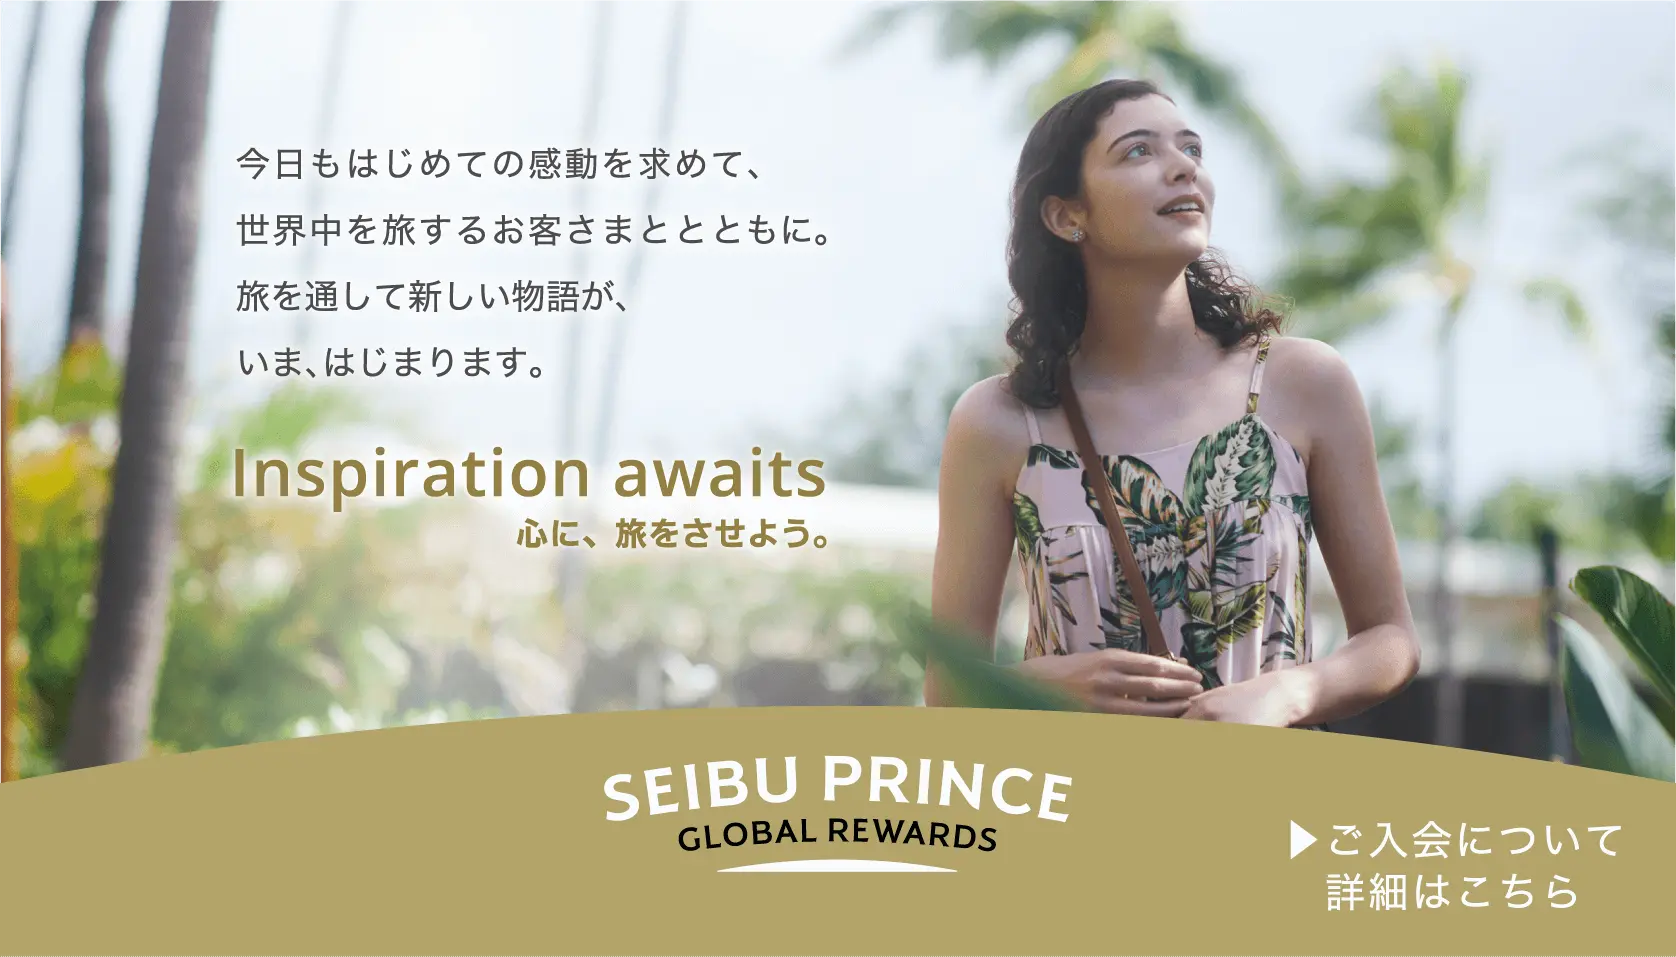 SEIBU PRINCE GLOBAL REWRDS 今日もはじめての感動を求めて、世界中を旅するお客さまととともに。旅を通して新しい物語が、いま、はじまります。 Inspiration awaits 心に、旅をさせよう。 ご入会について詳細はこちら